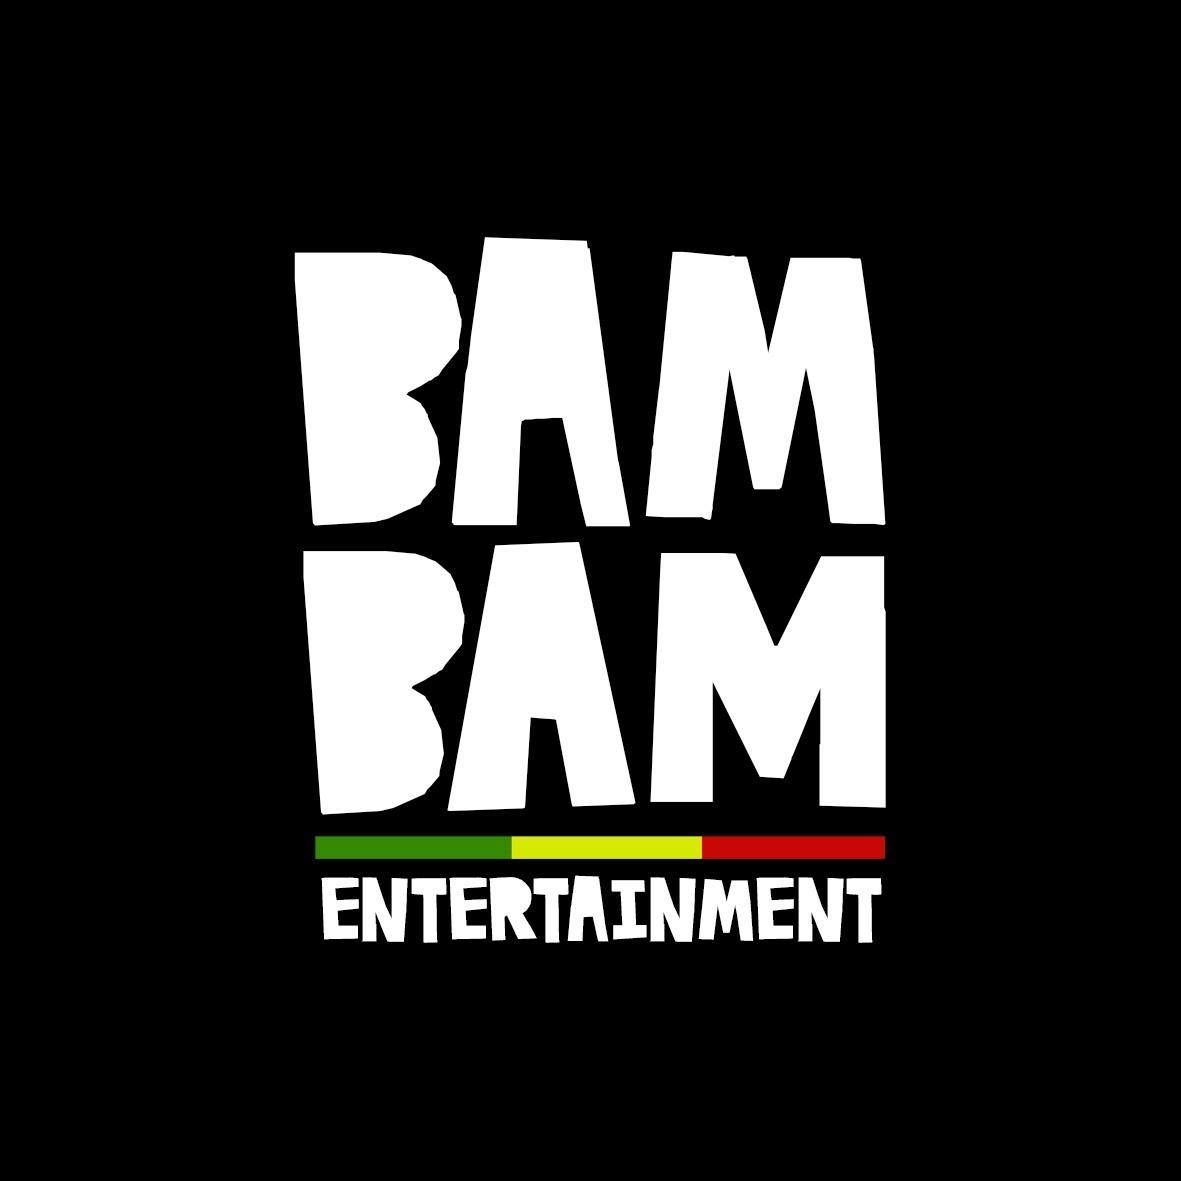 Bam Bam Entertainment